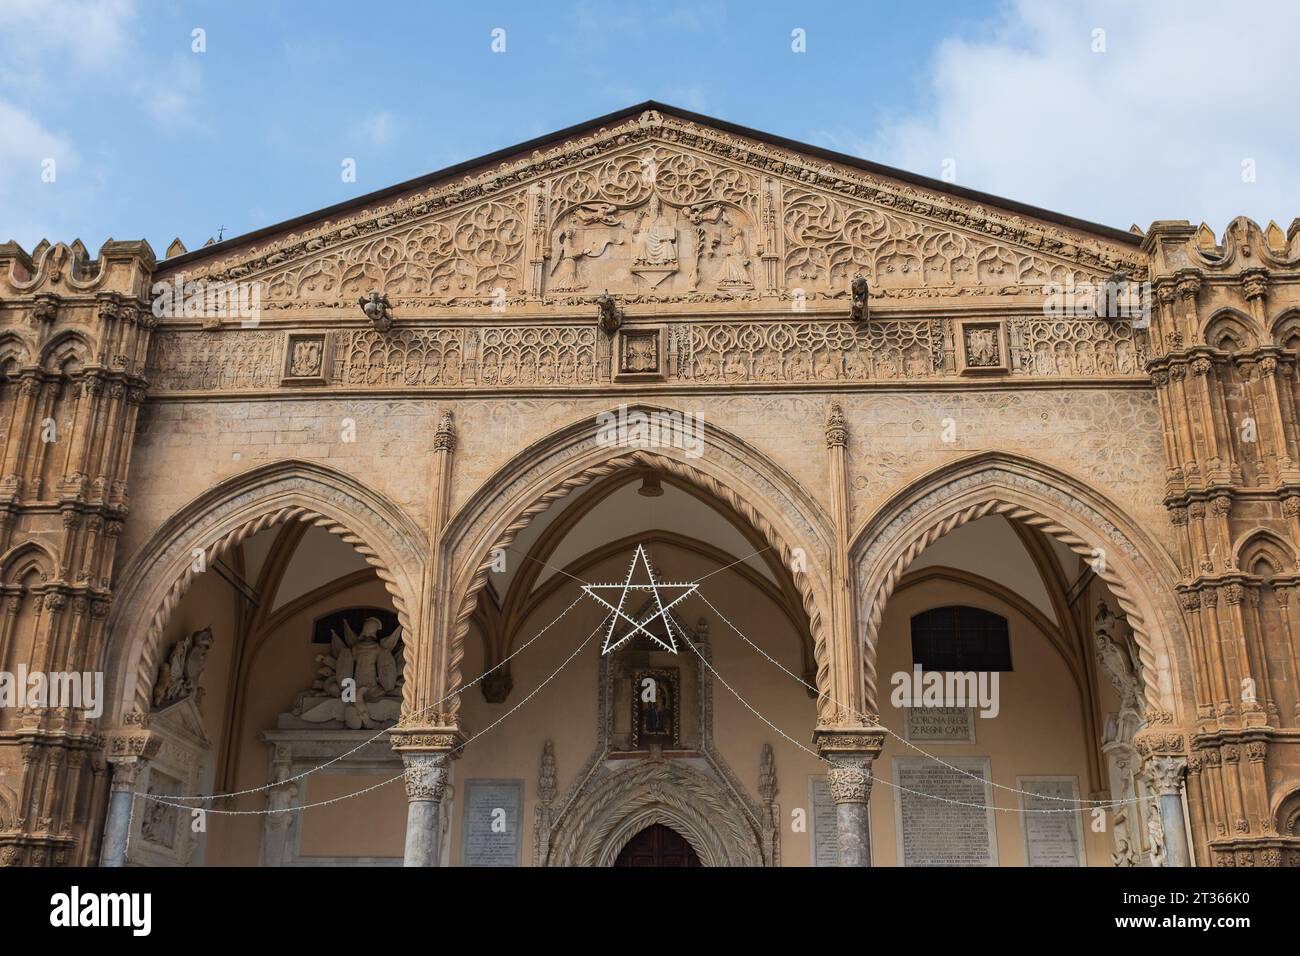 Palerme, Sicile, 2016. Le portique et les trois arcades de l'entrée principale gothique-catalane du Duomo saluent les visiteurs avec une étoile pour Noël Banque D'Images